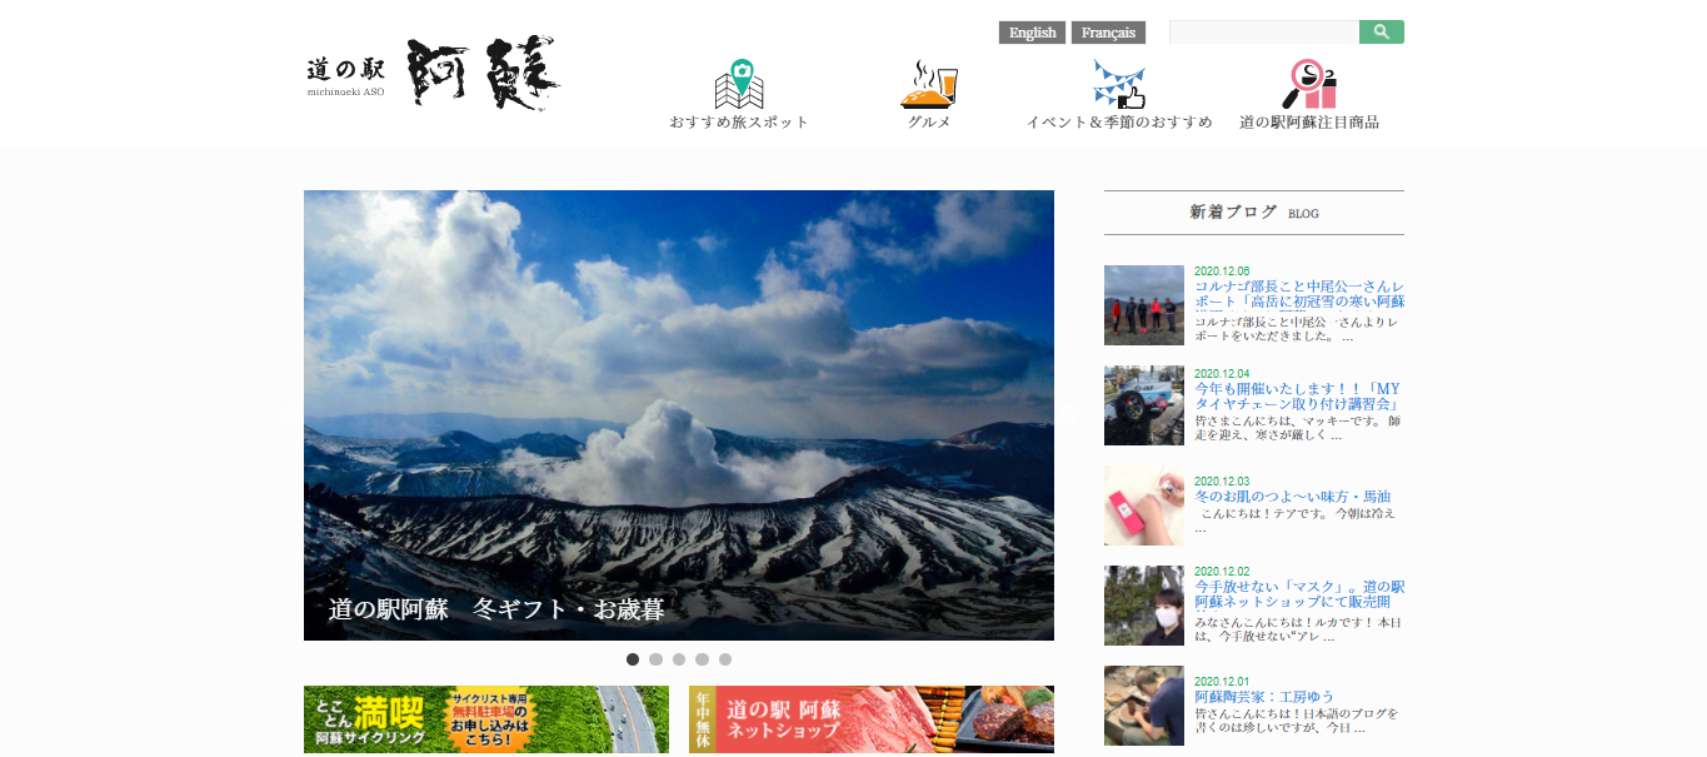 screenshot www.aso denku.jp 2020.12.07 09 38 02